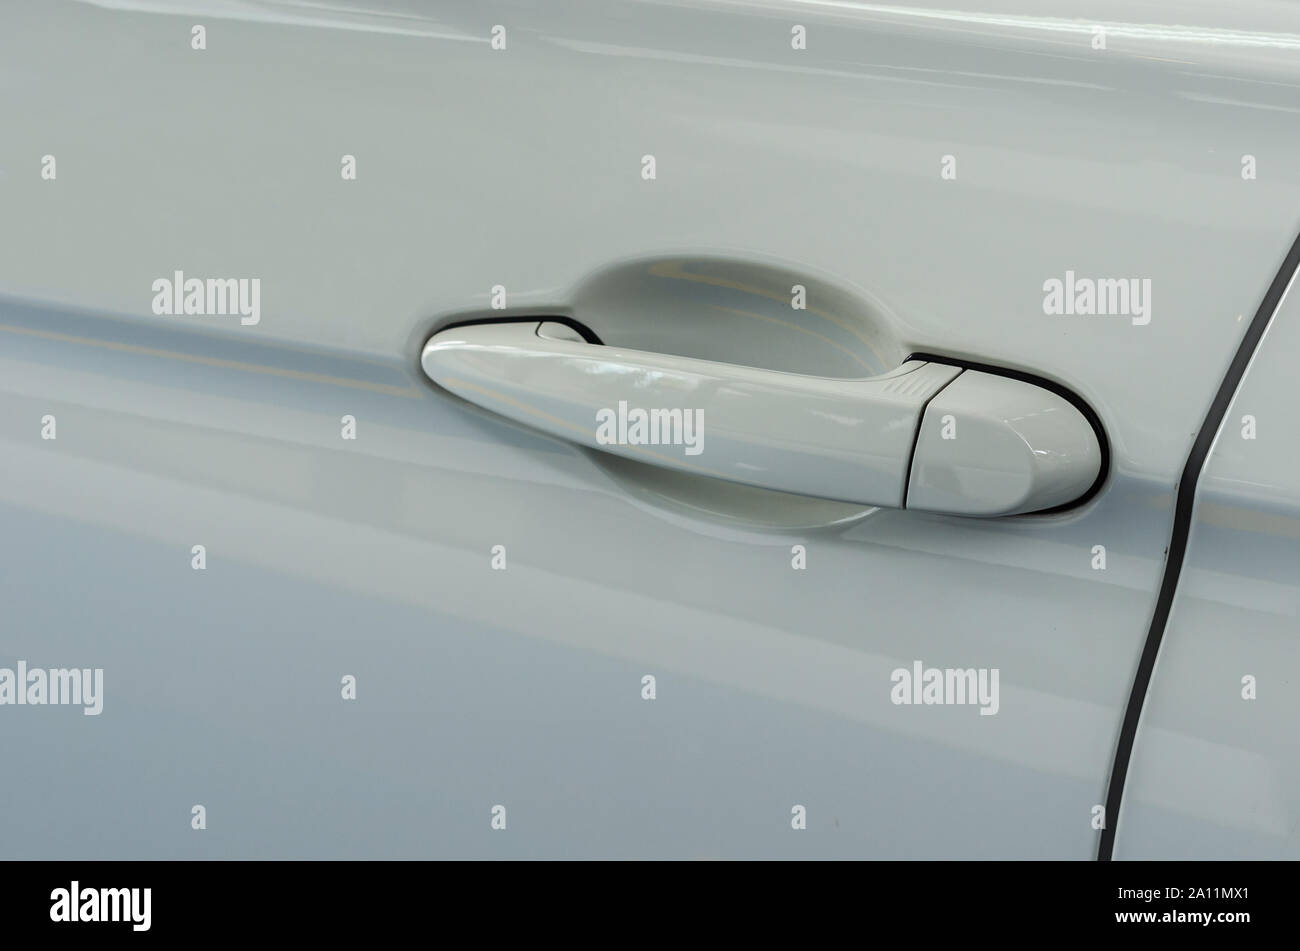 Modernes weißes Auto Türgriff. Auto Türgriff ist ein externes Teil des Autos  Stockfotografie - Alamy